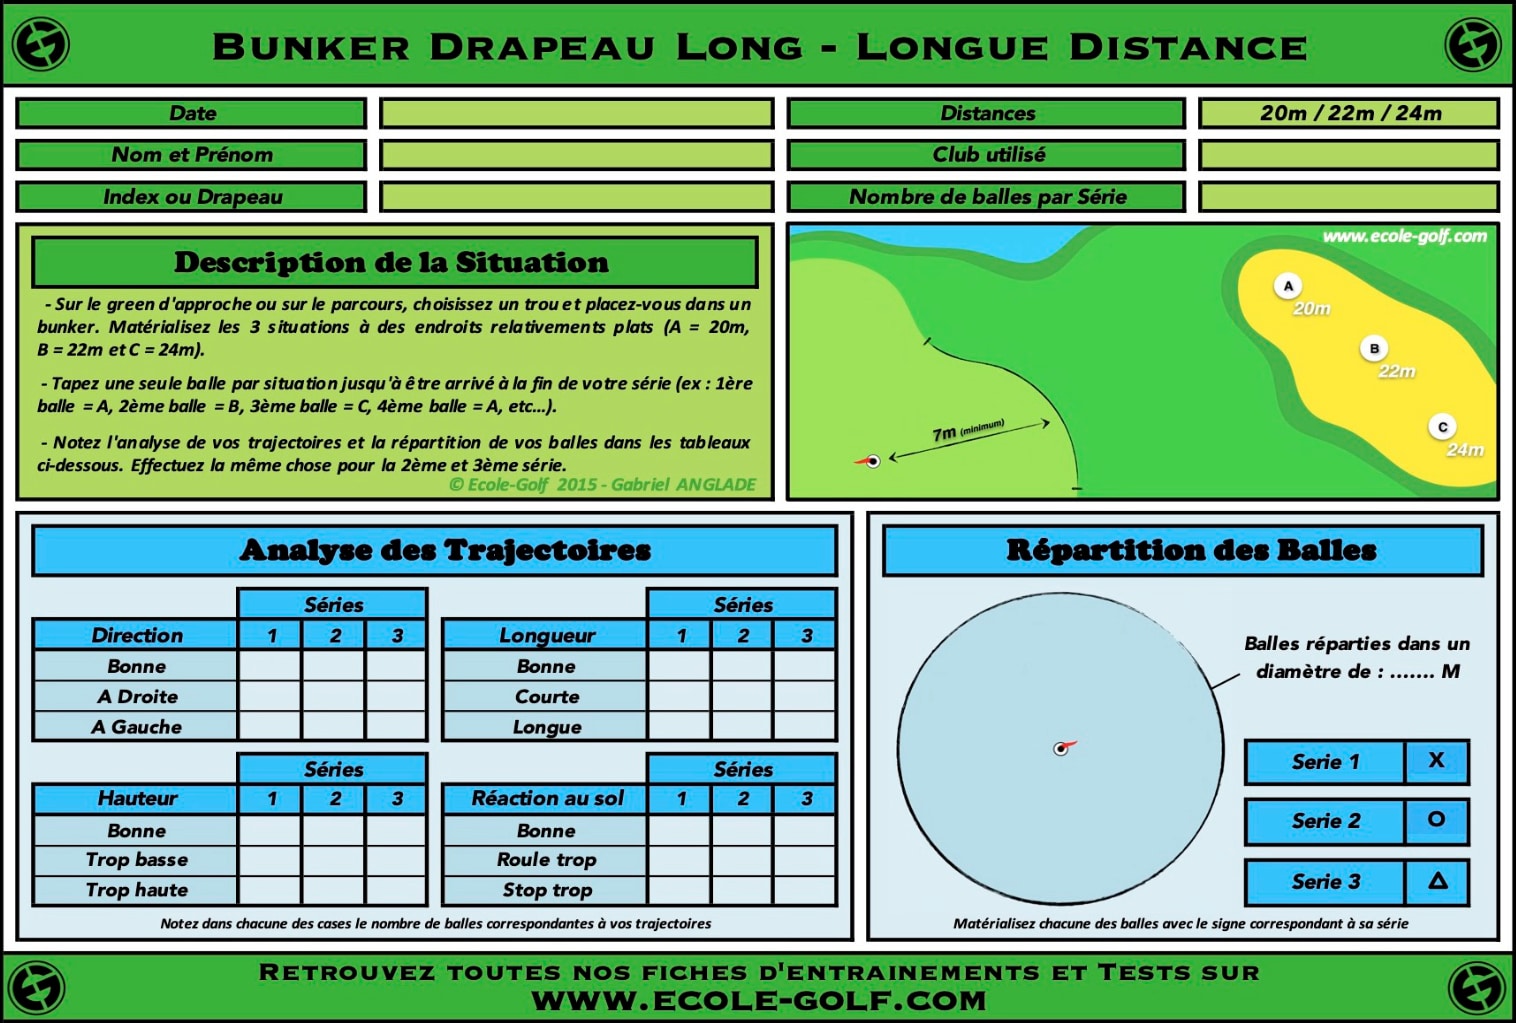 Bunker Drapeau Long - Longue Distance